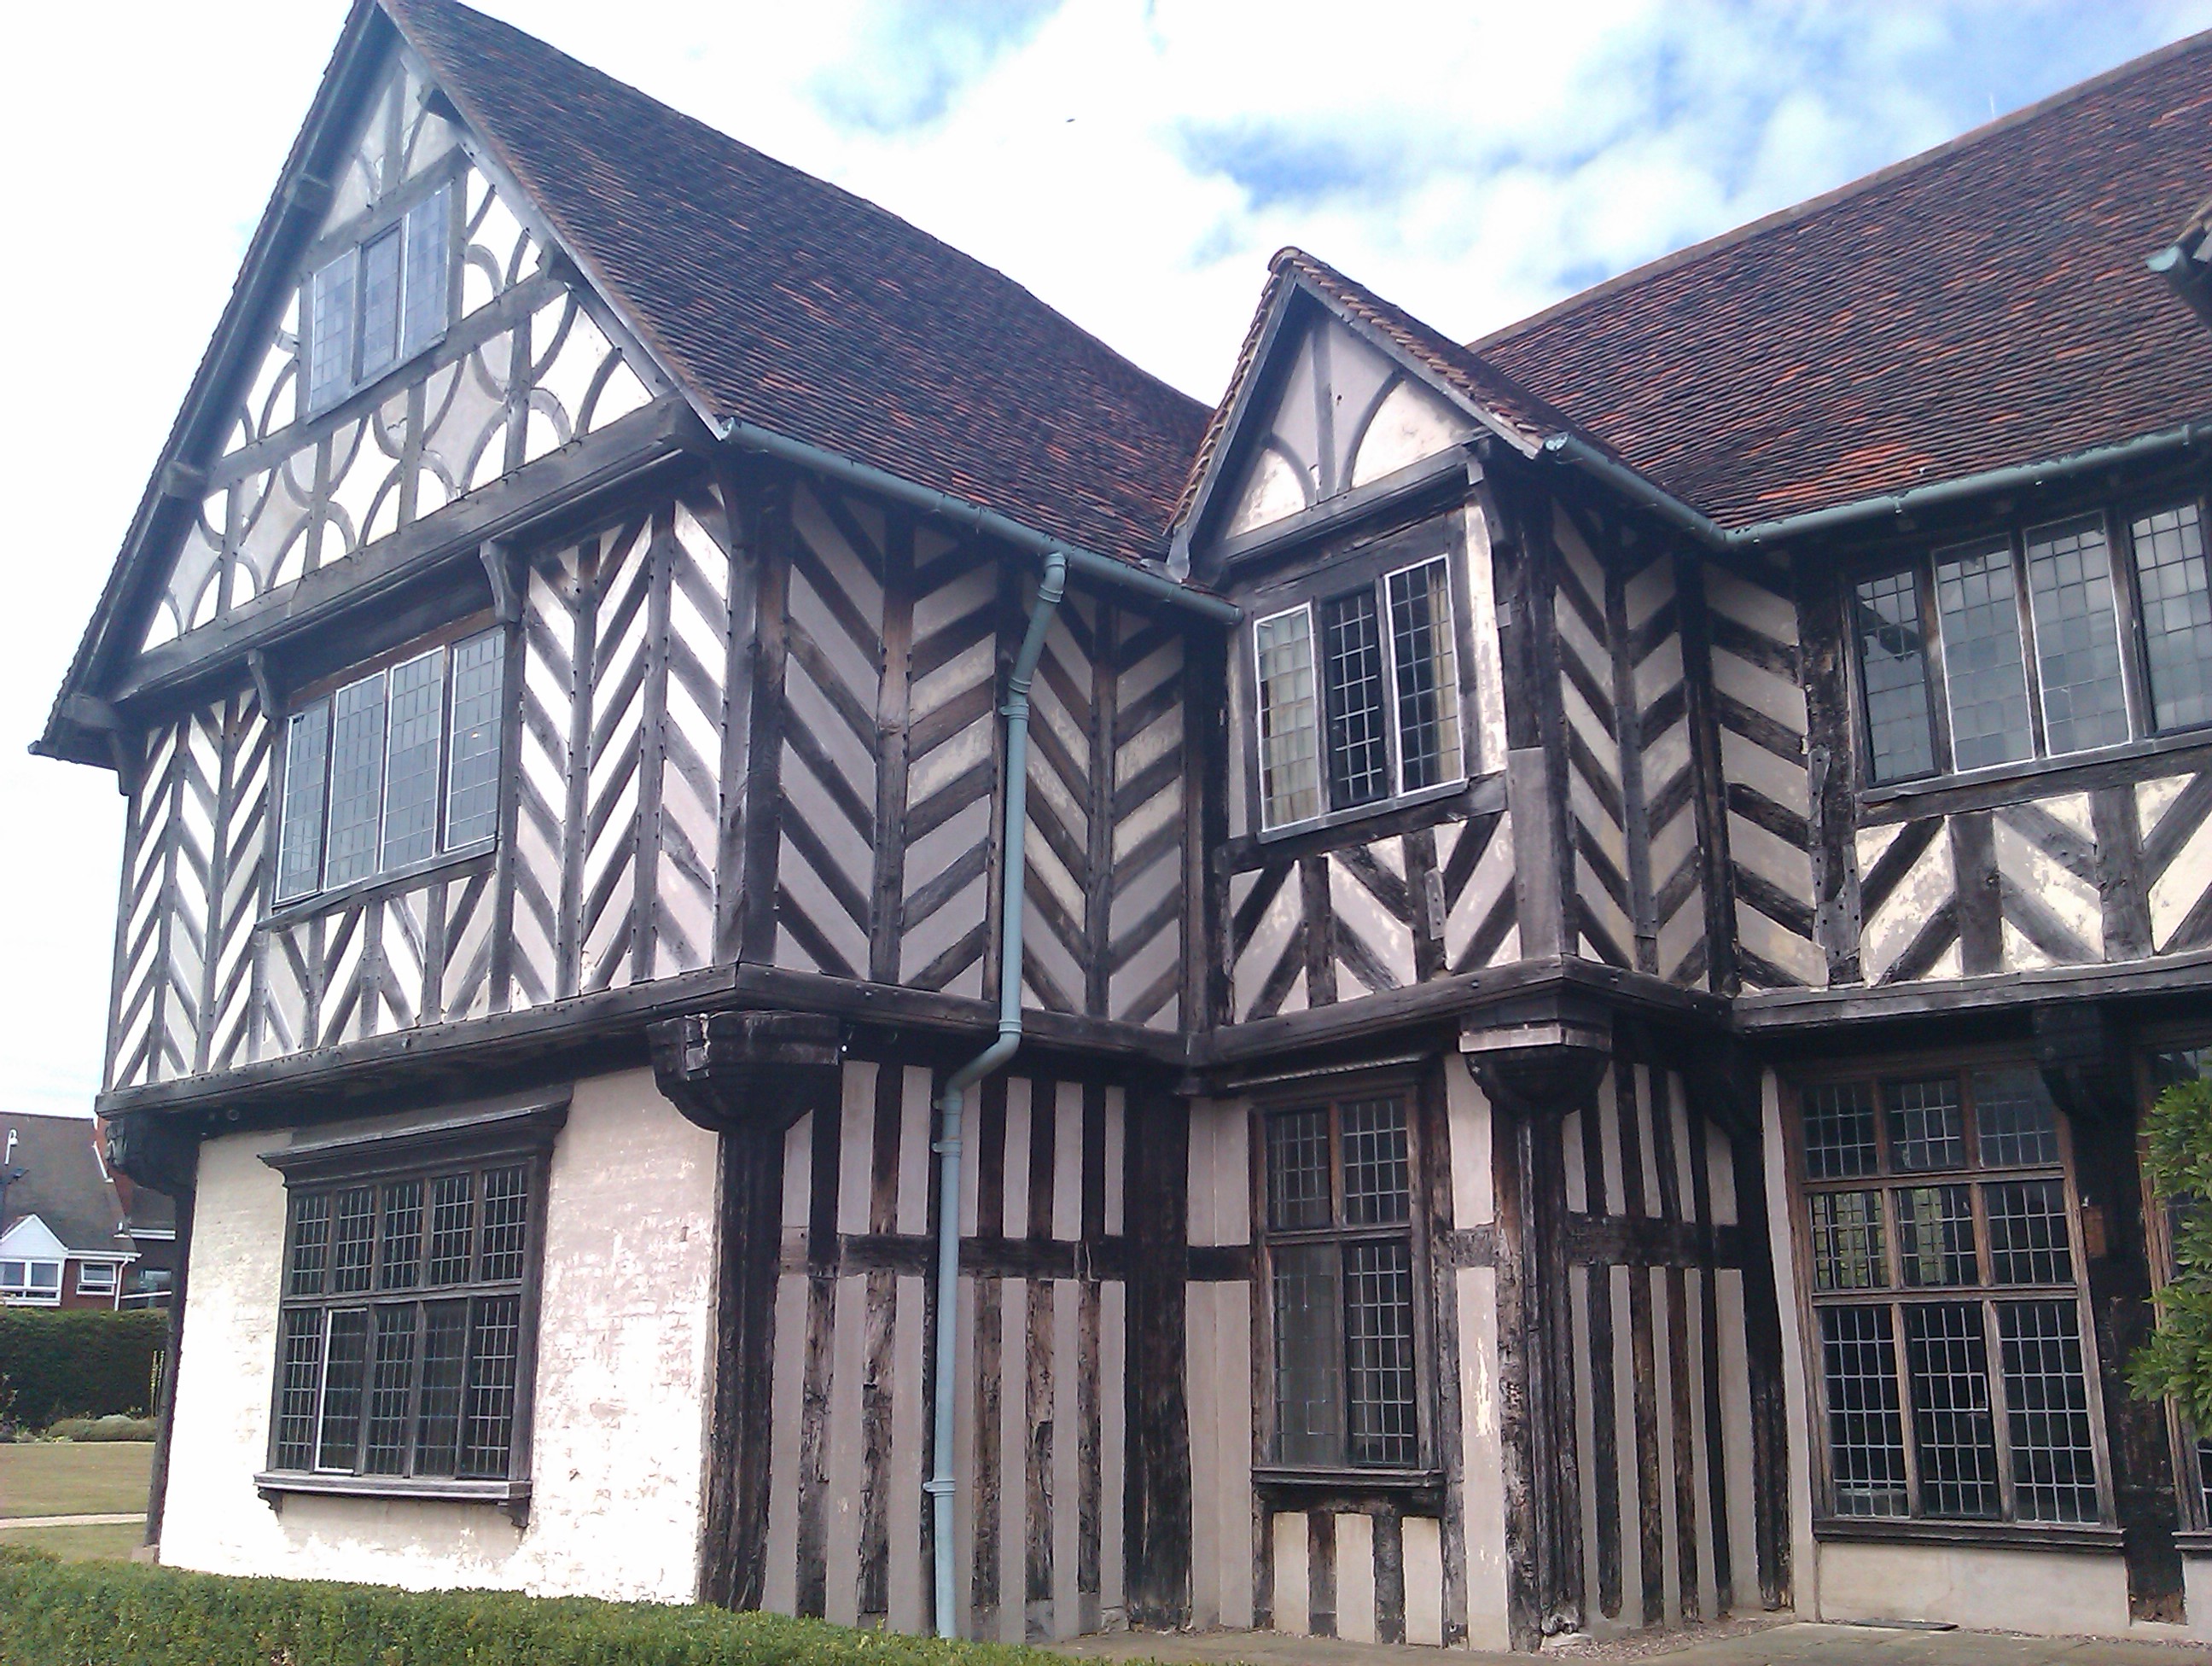 Tudor hall